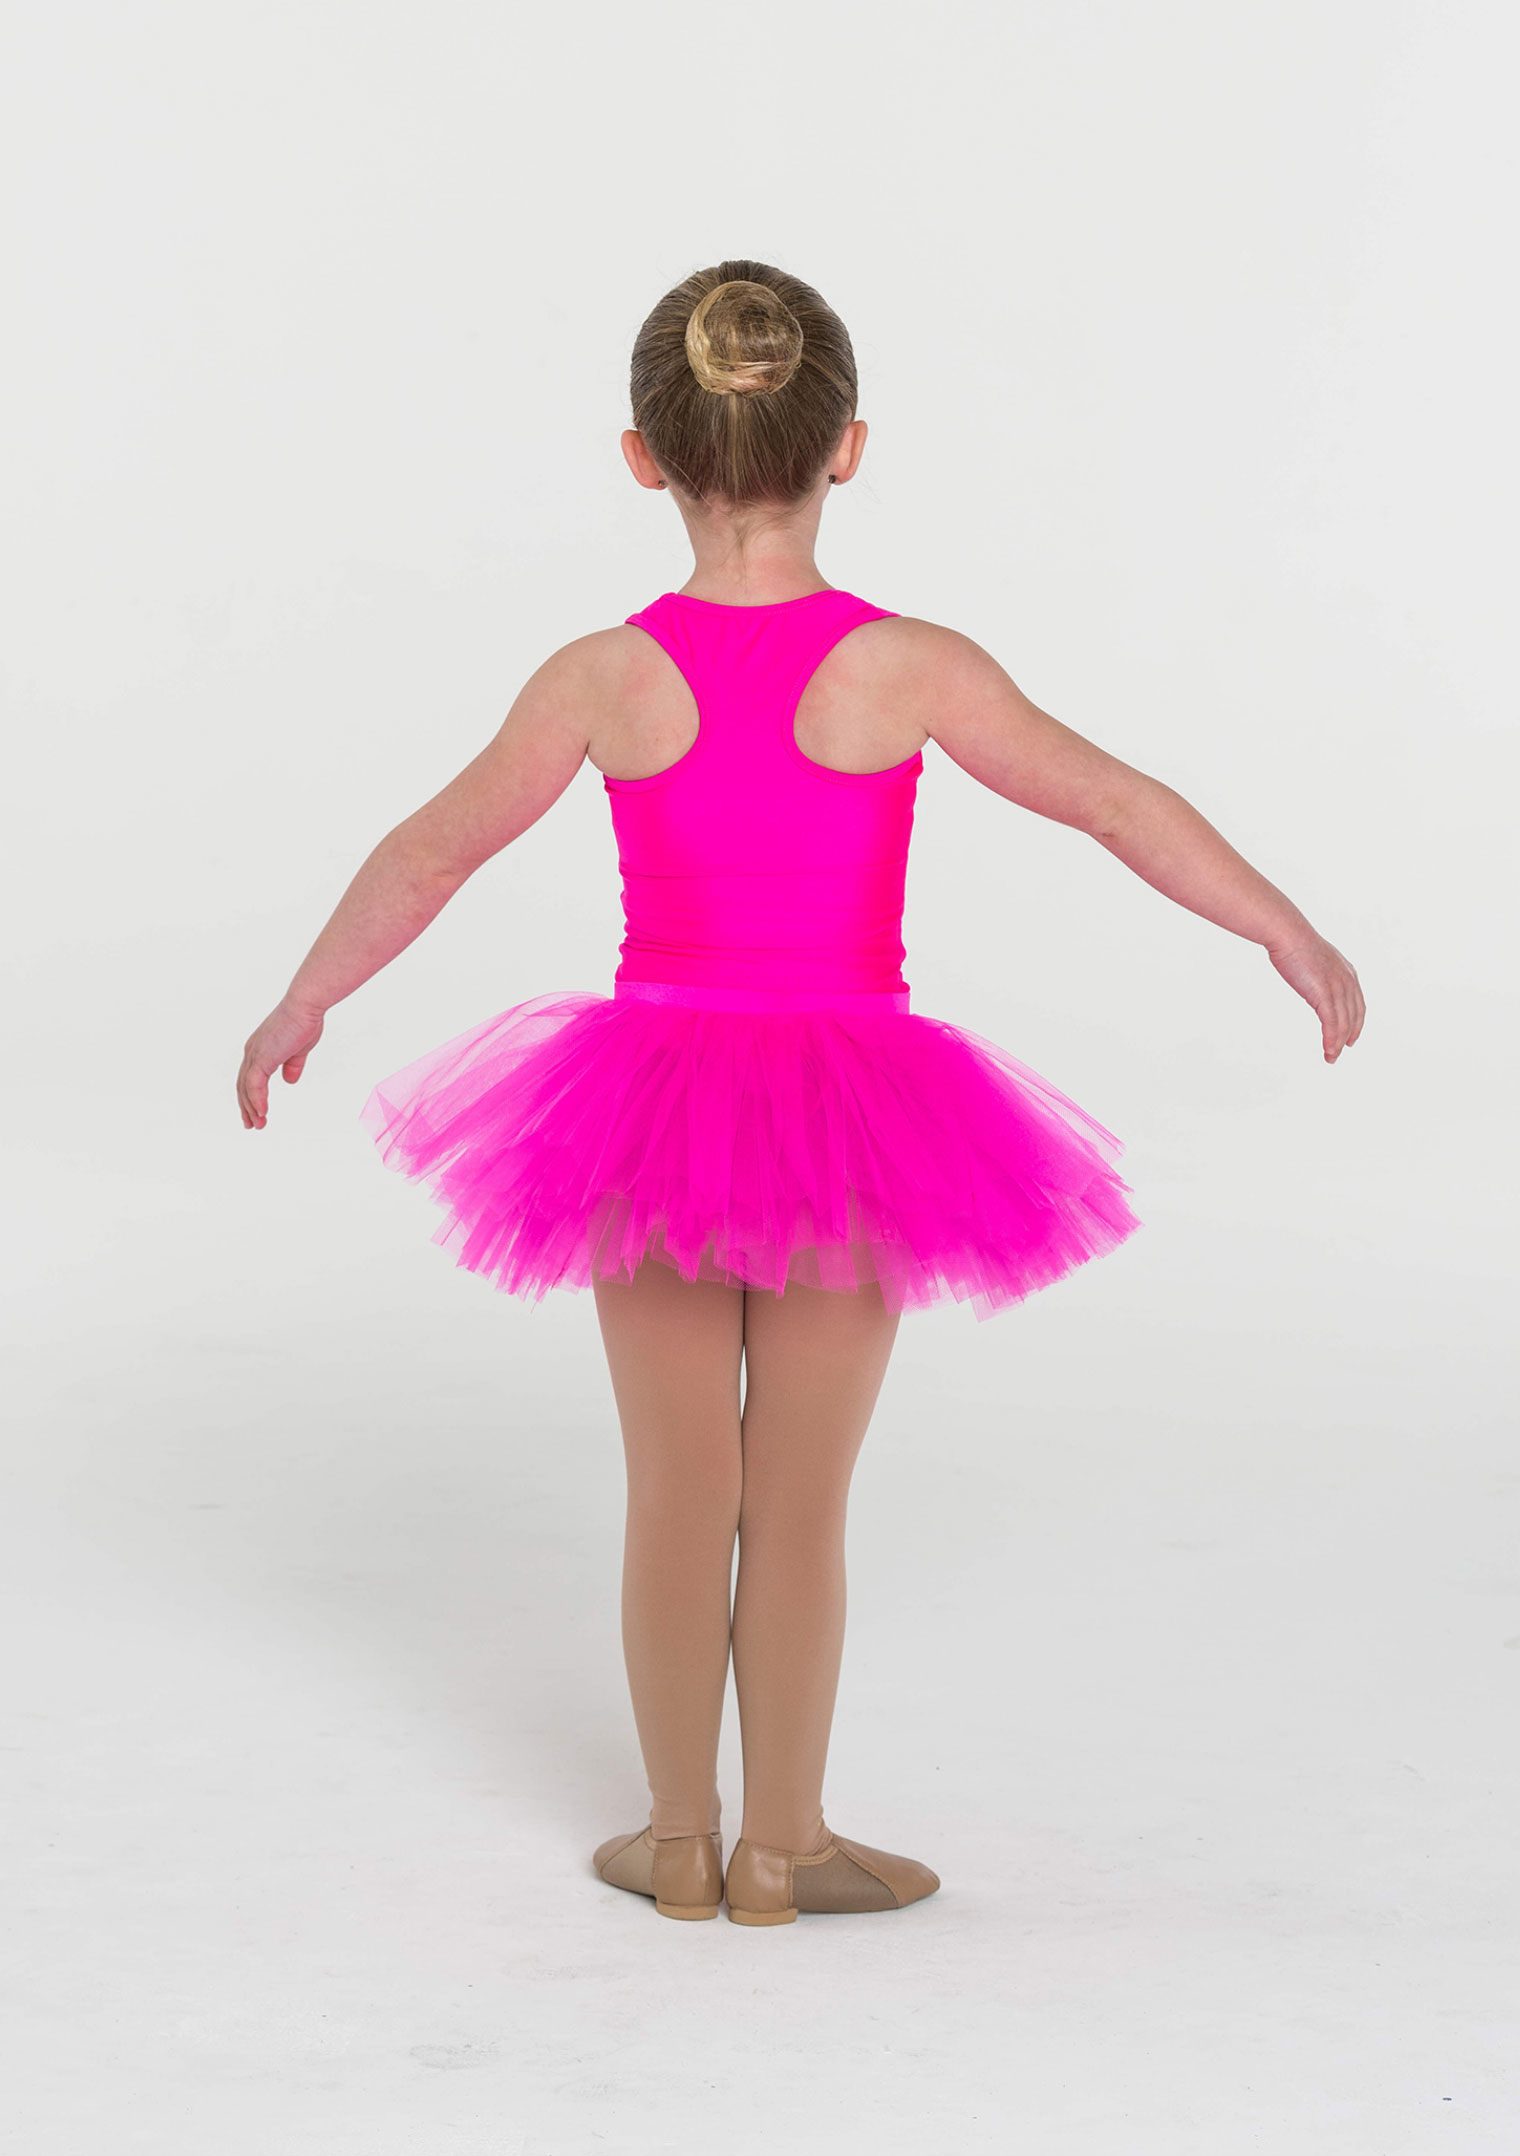 Giselle Coppelia Romantic Ballet TuTu Costume Baby Pink La Fille Mal G   UniqueBallet